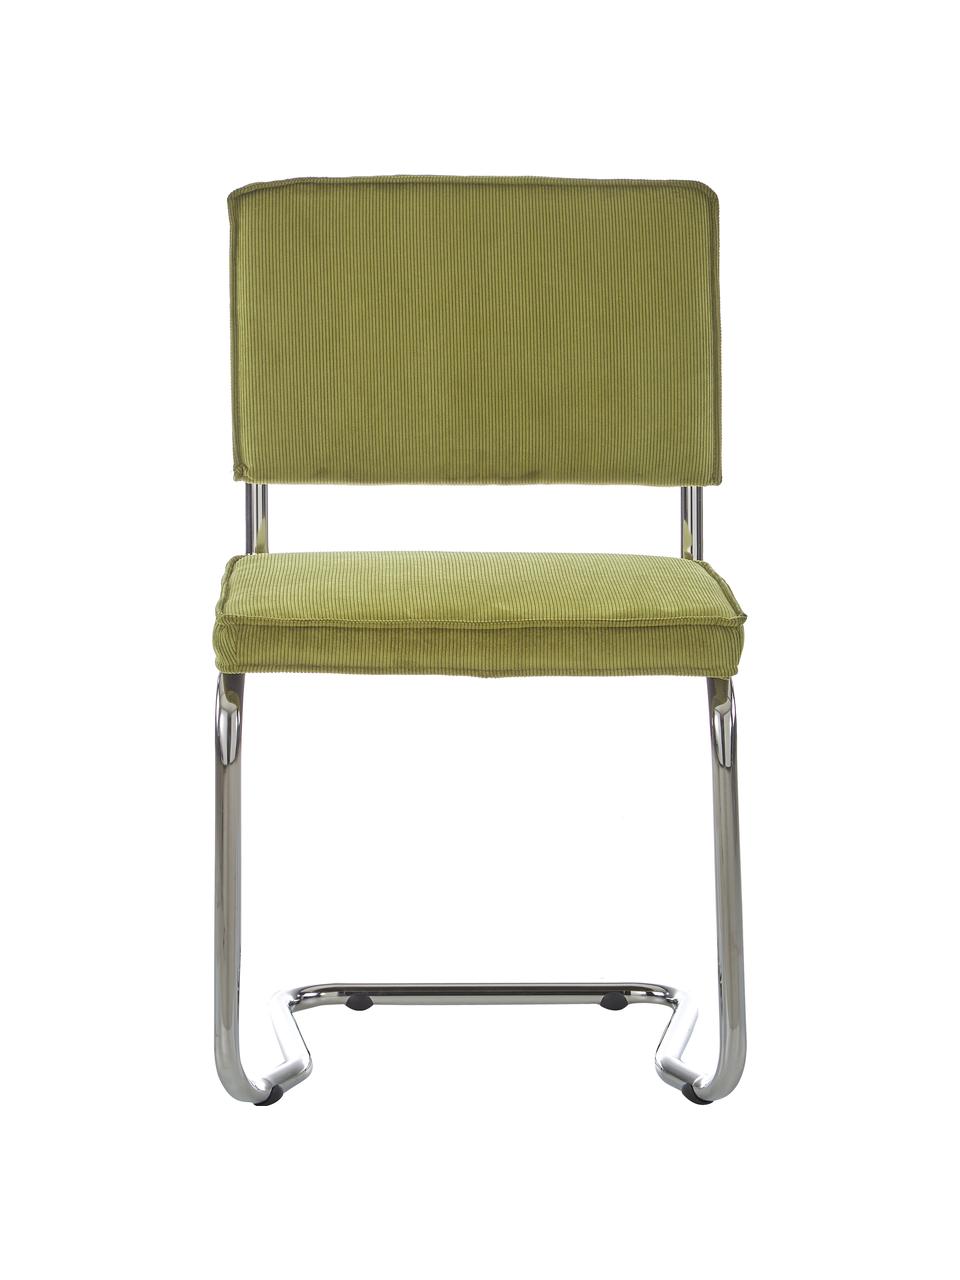 Chaise cantilever en velours côtelé Kink, Velours côtelé vert, couleur chrome, larg. 48 x prof. 48 cm